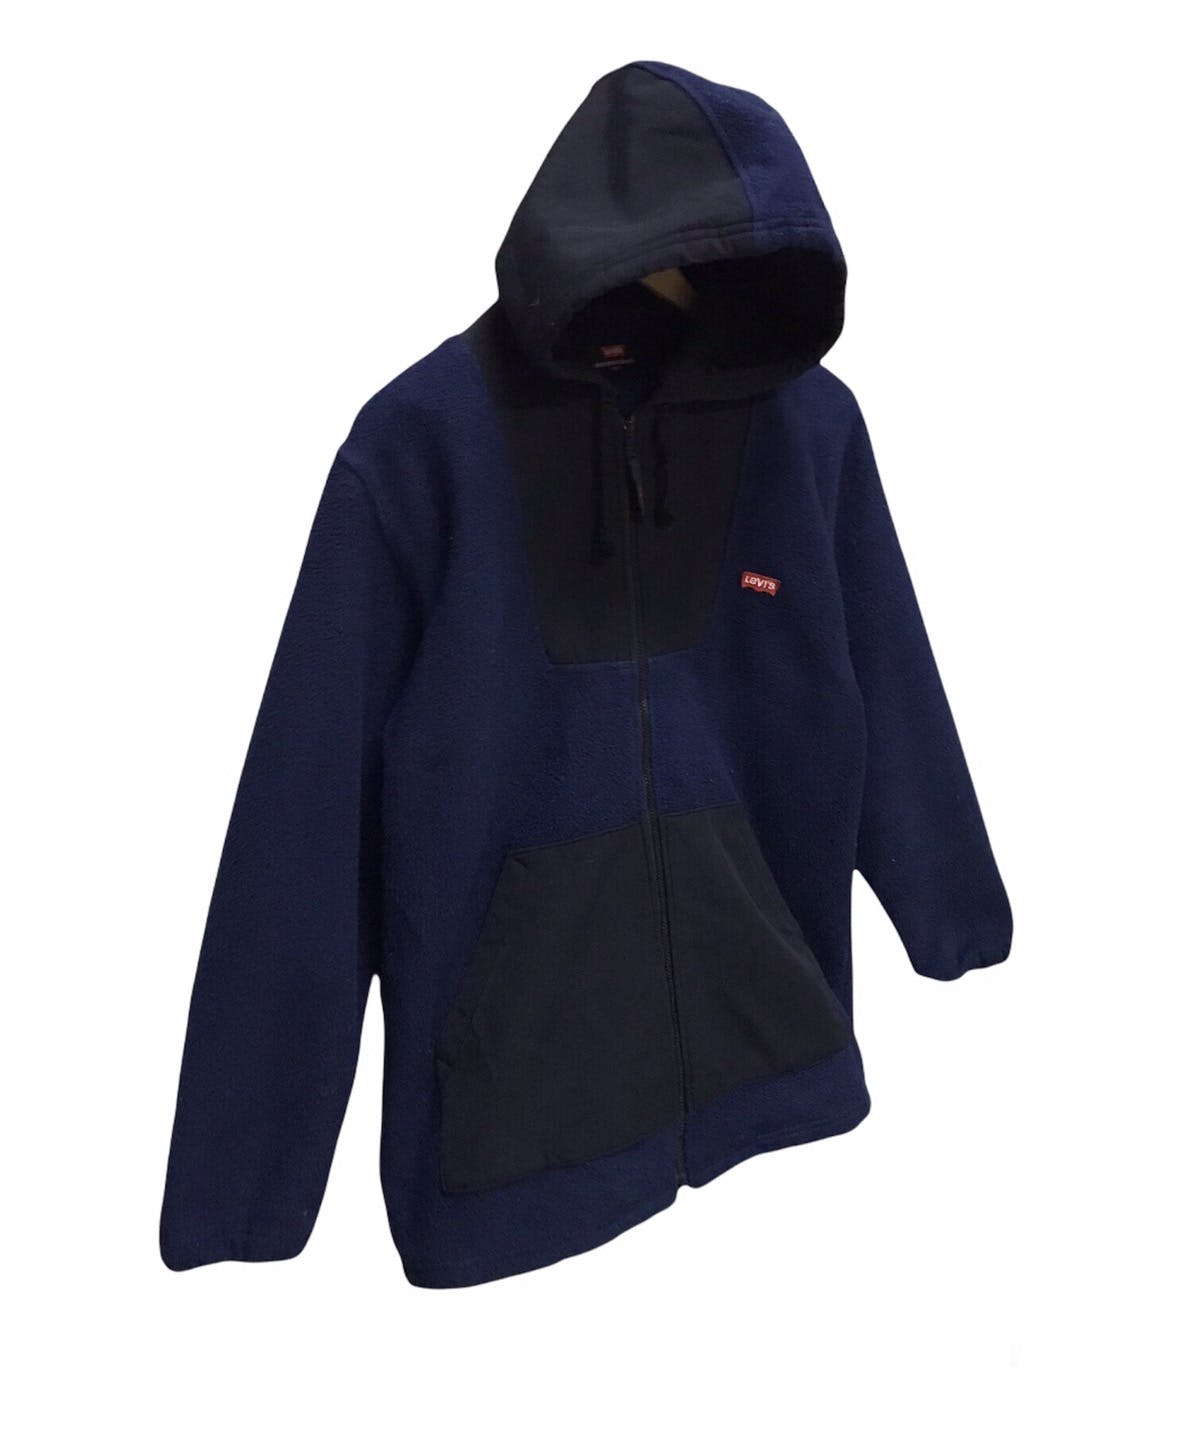 Levis fleece hoodie zipper - 3